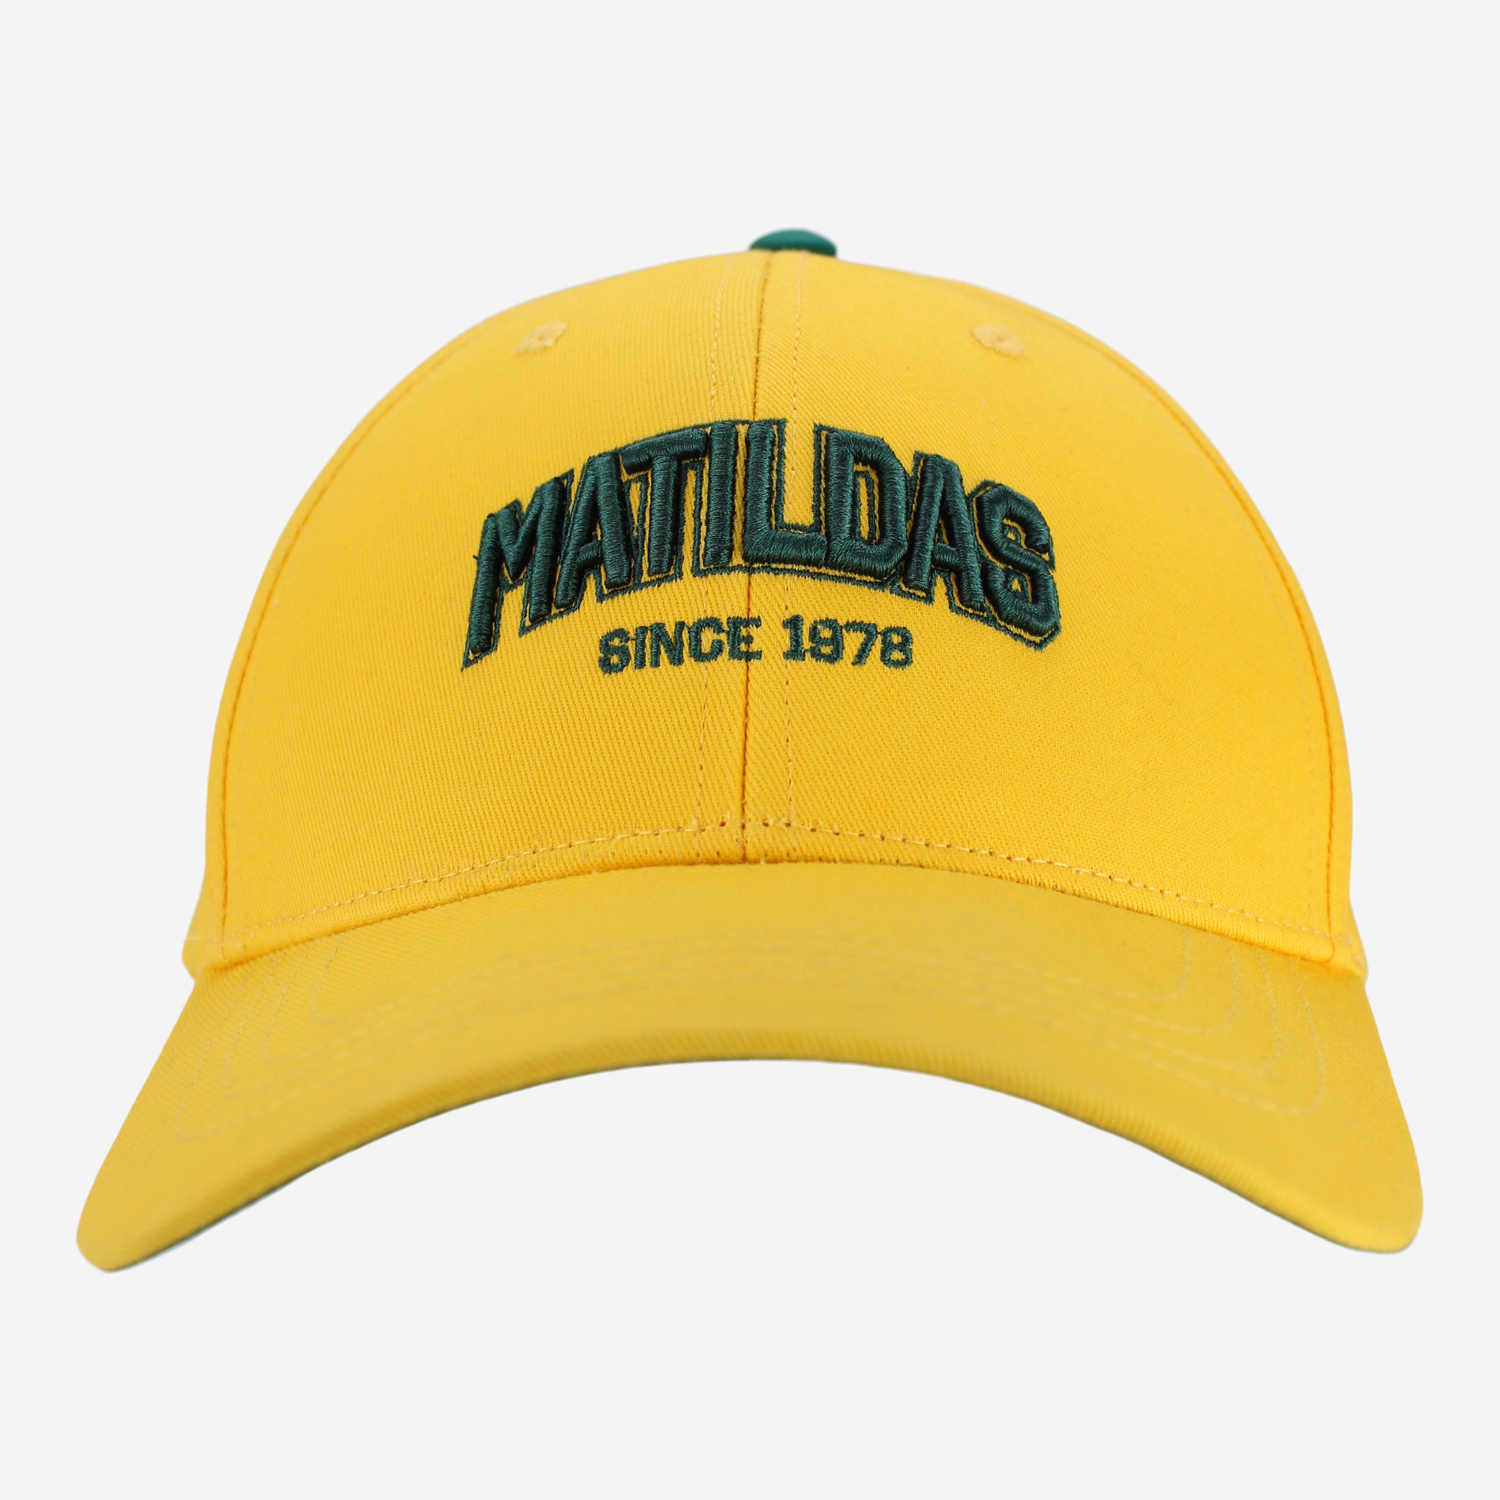 Matildas Cap